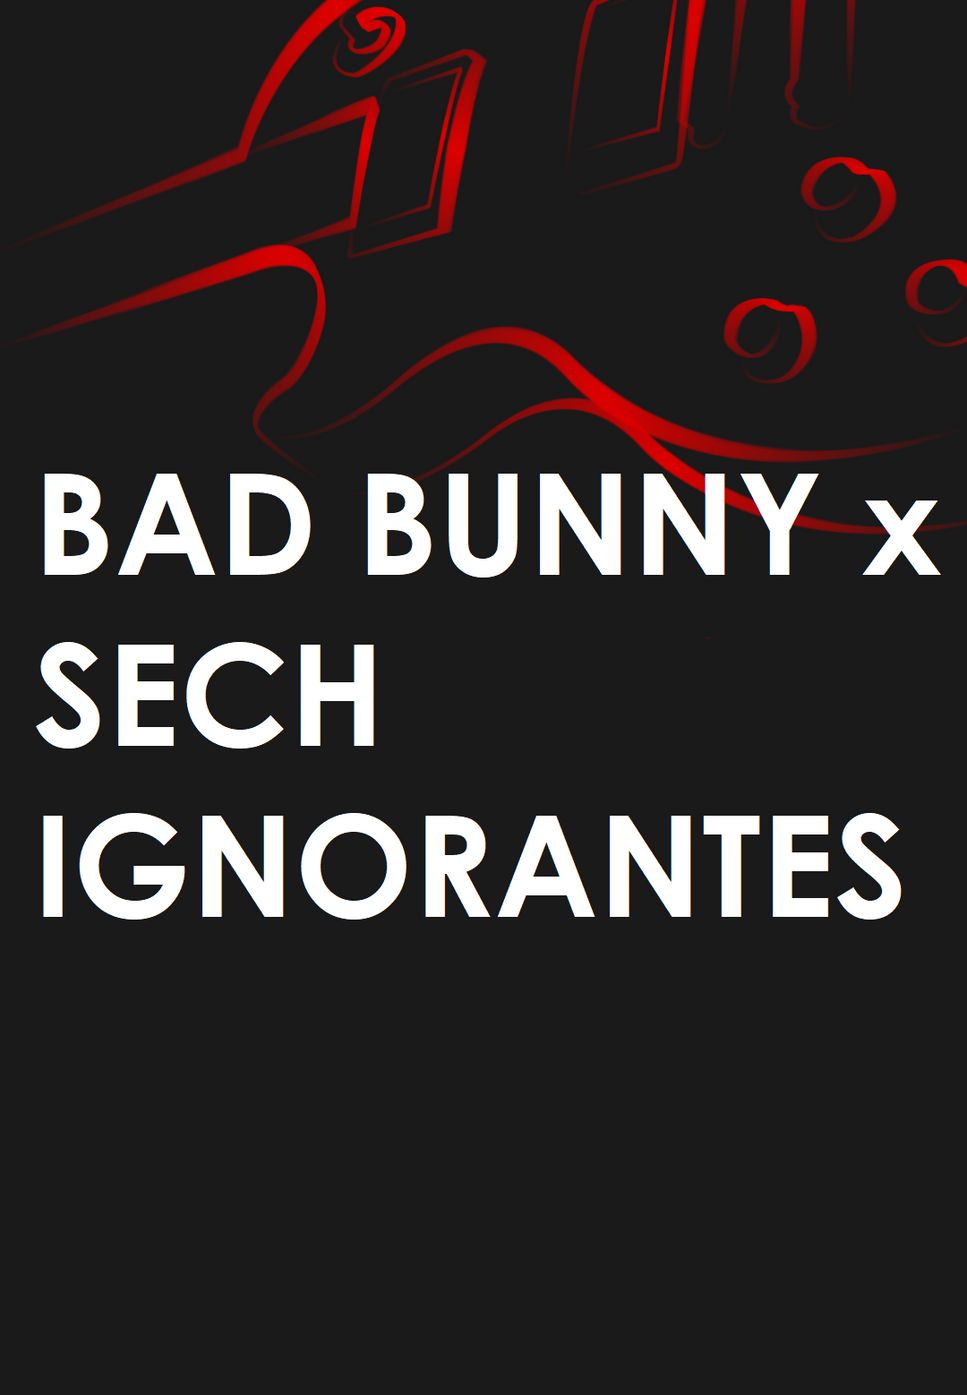 BAD BUNNY x SECH - IGNORANTES by Mario Serrato